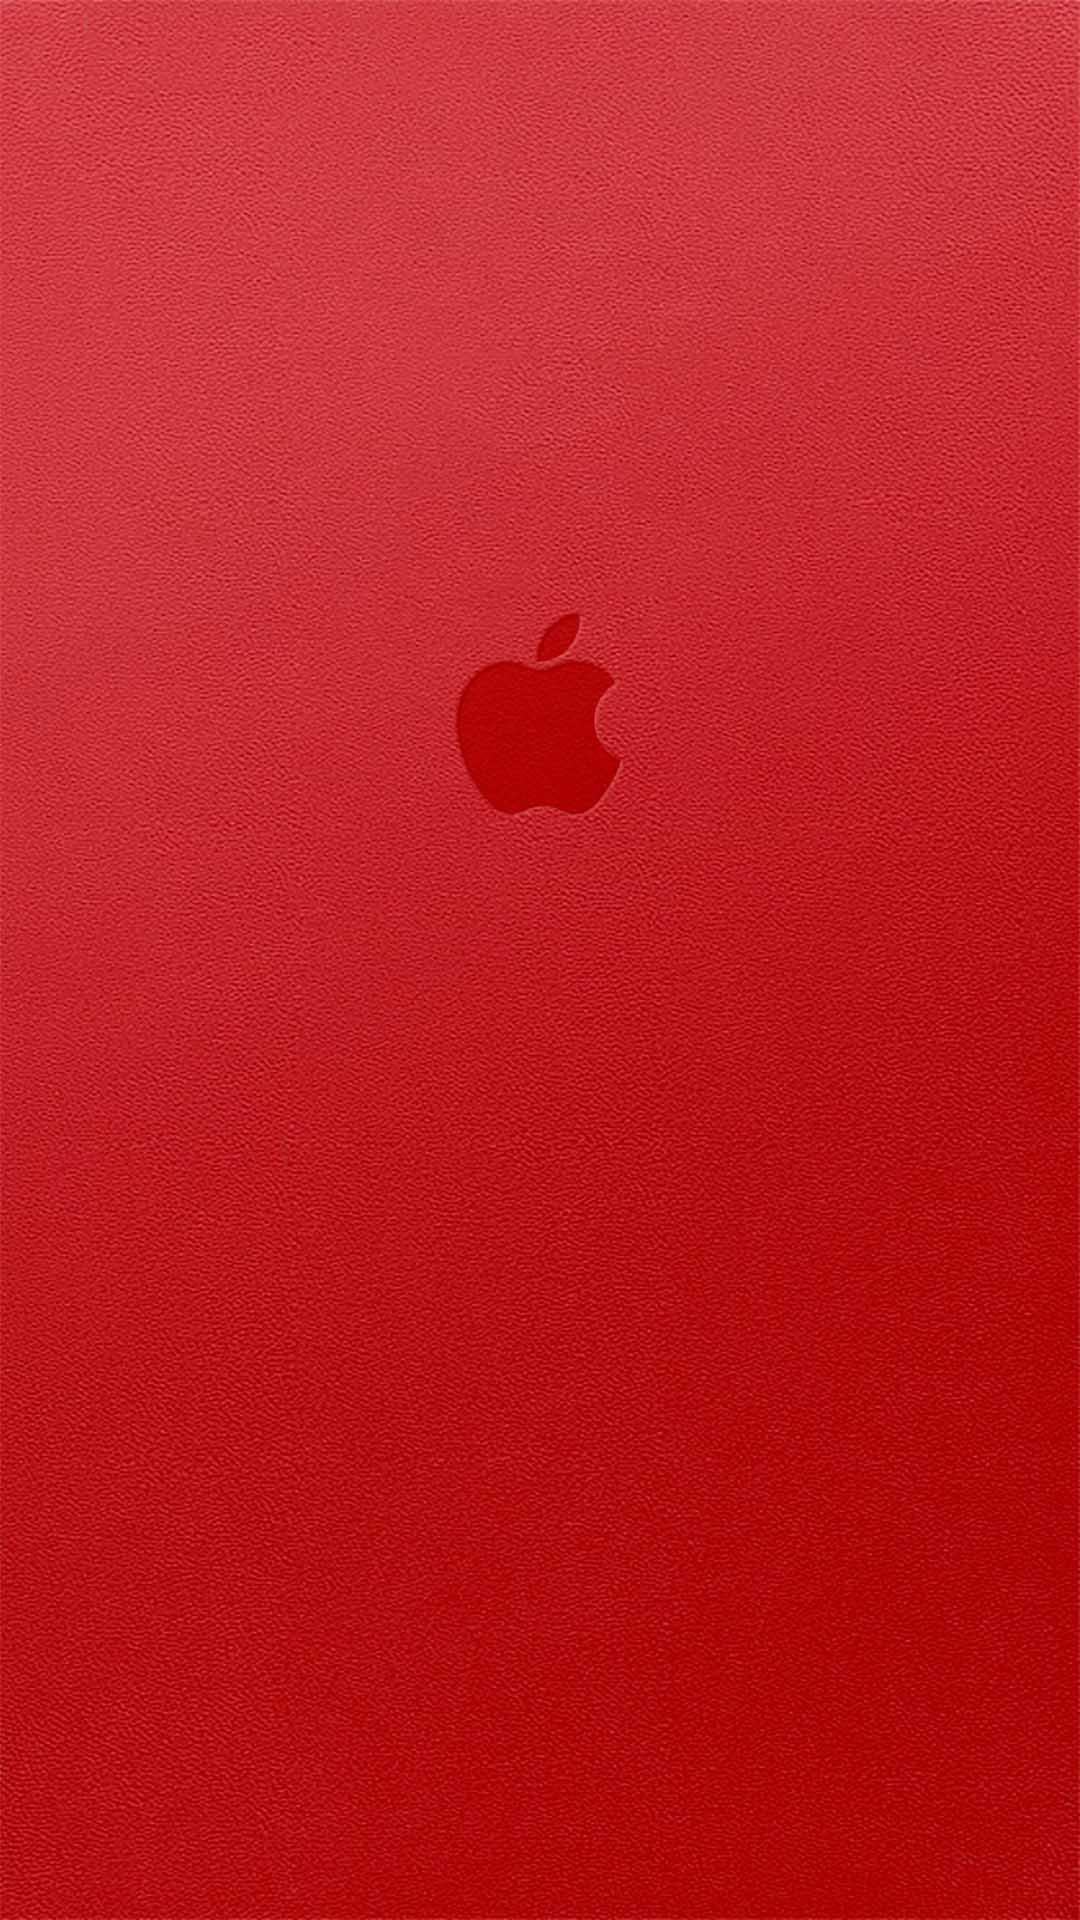 Red シンプルでかっこいいiphone壁紙 Iphone11 スマホ壁紙 待受画像ギャラリー